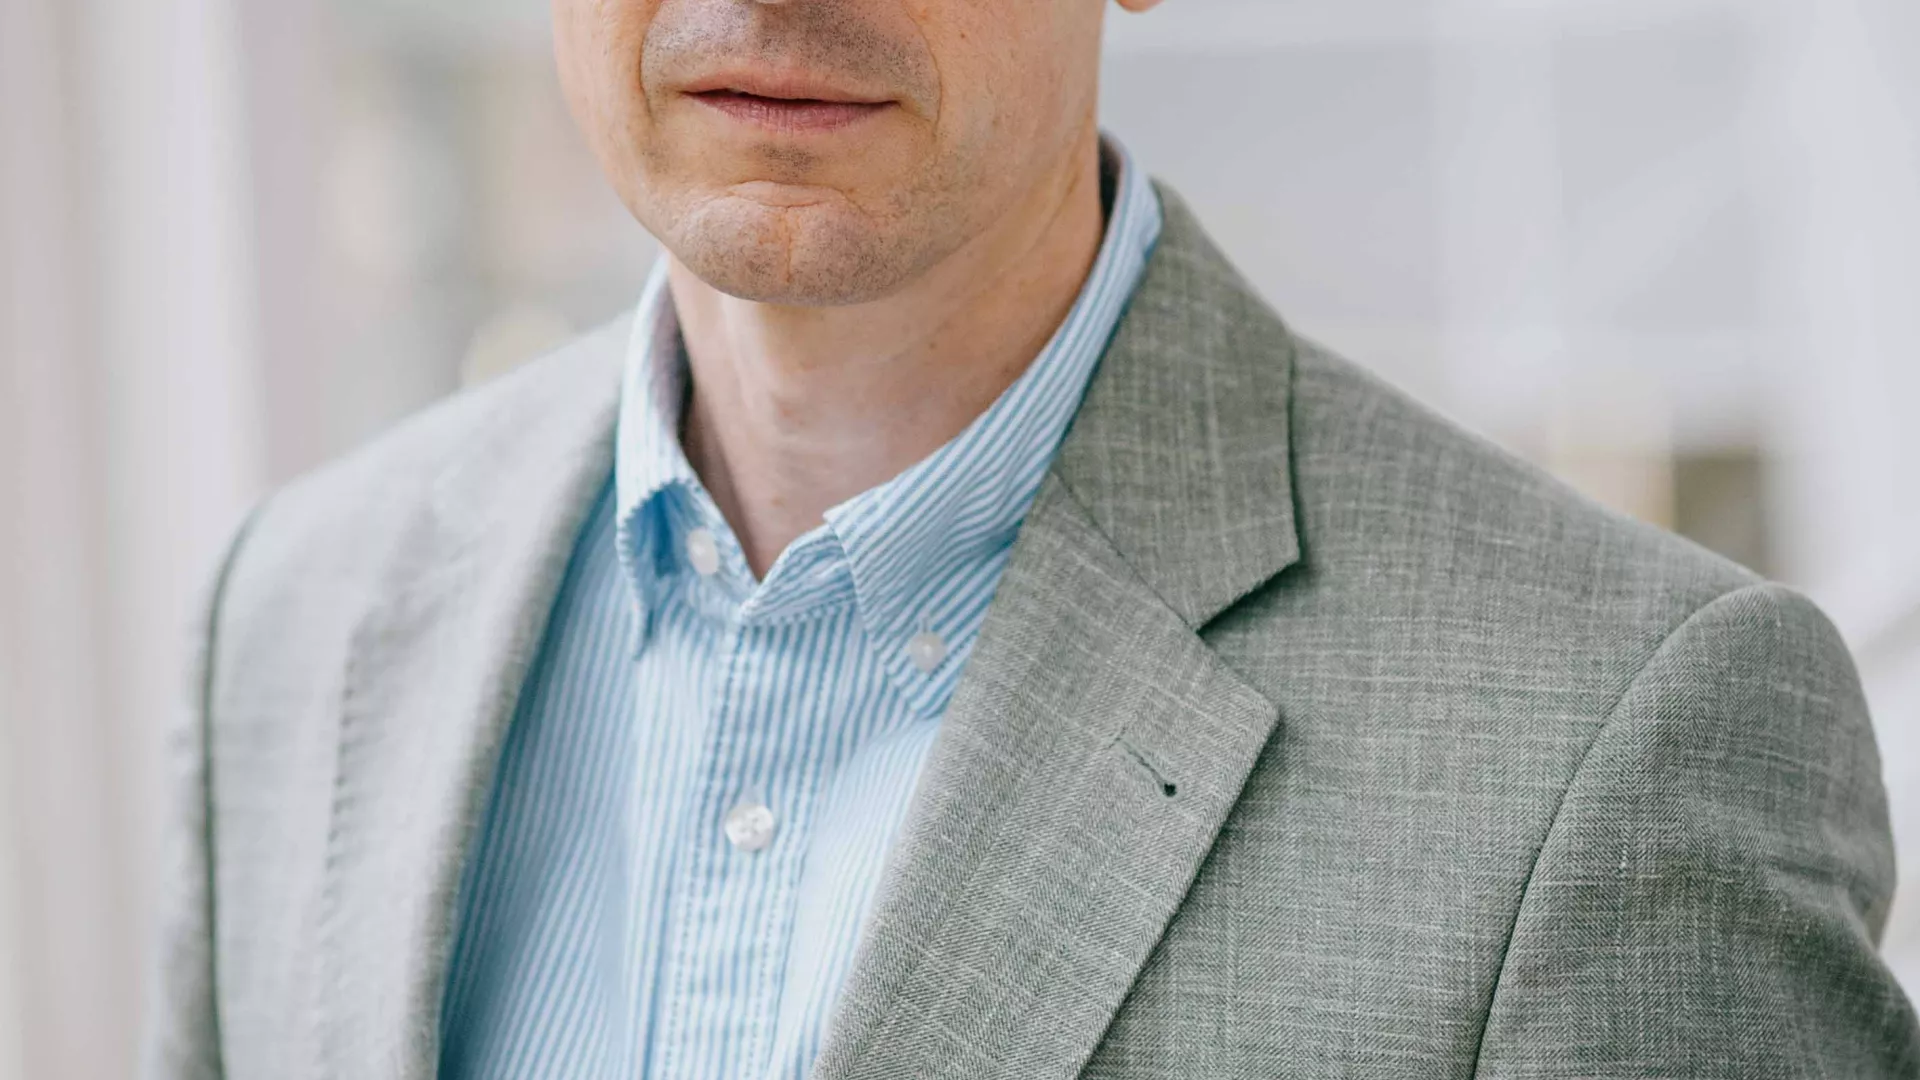 Johann Georg von Hülsen (CEO der SENEC GmbH) in grauem Anzug